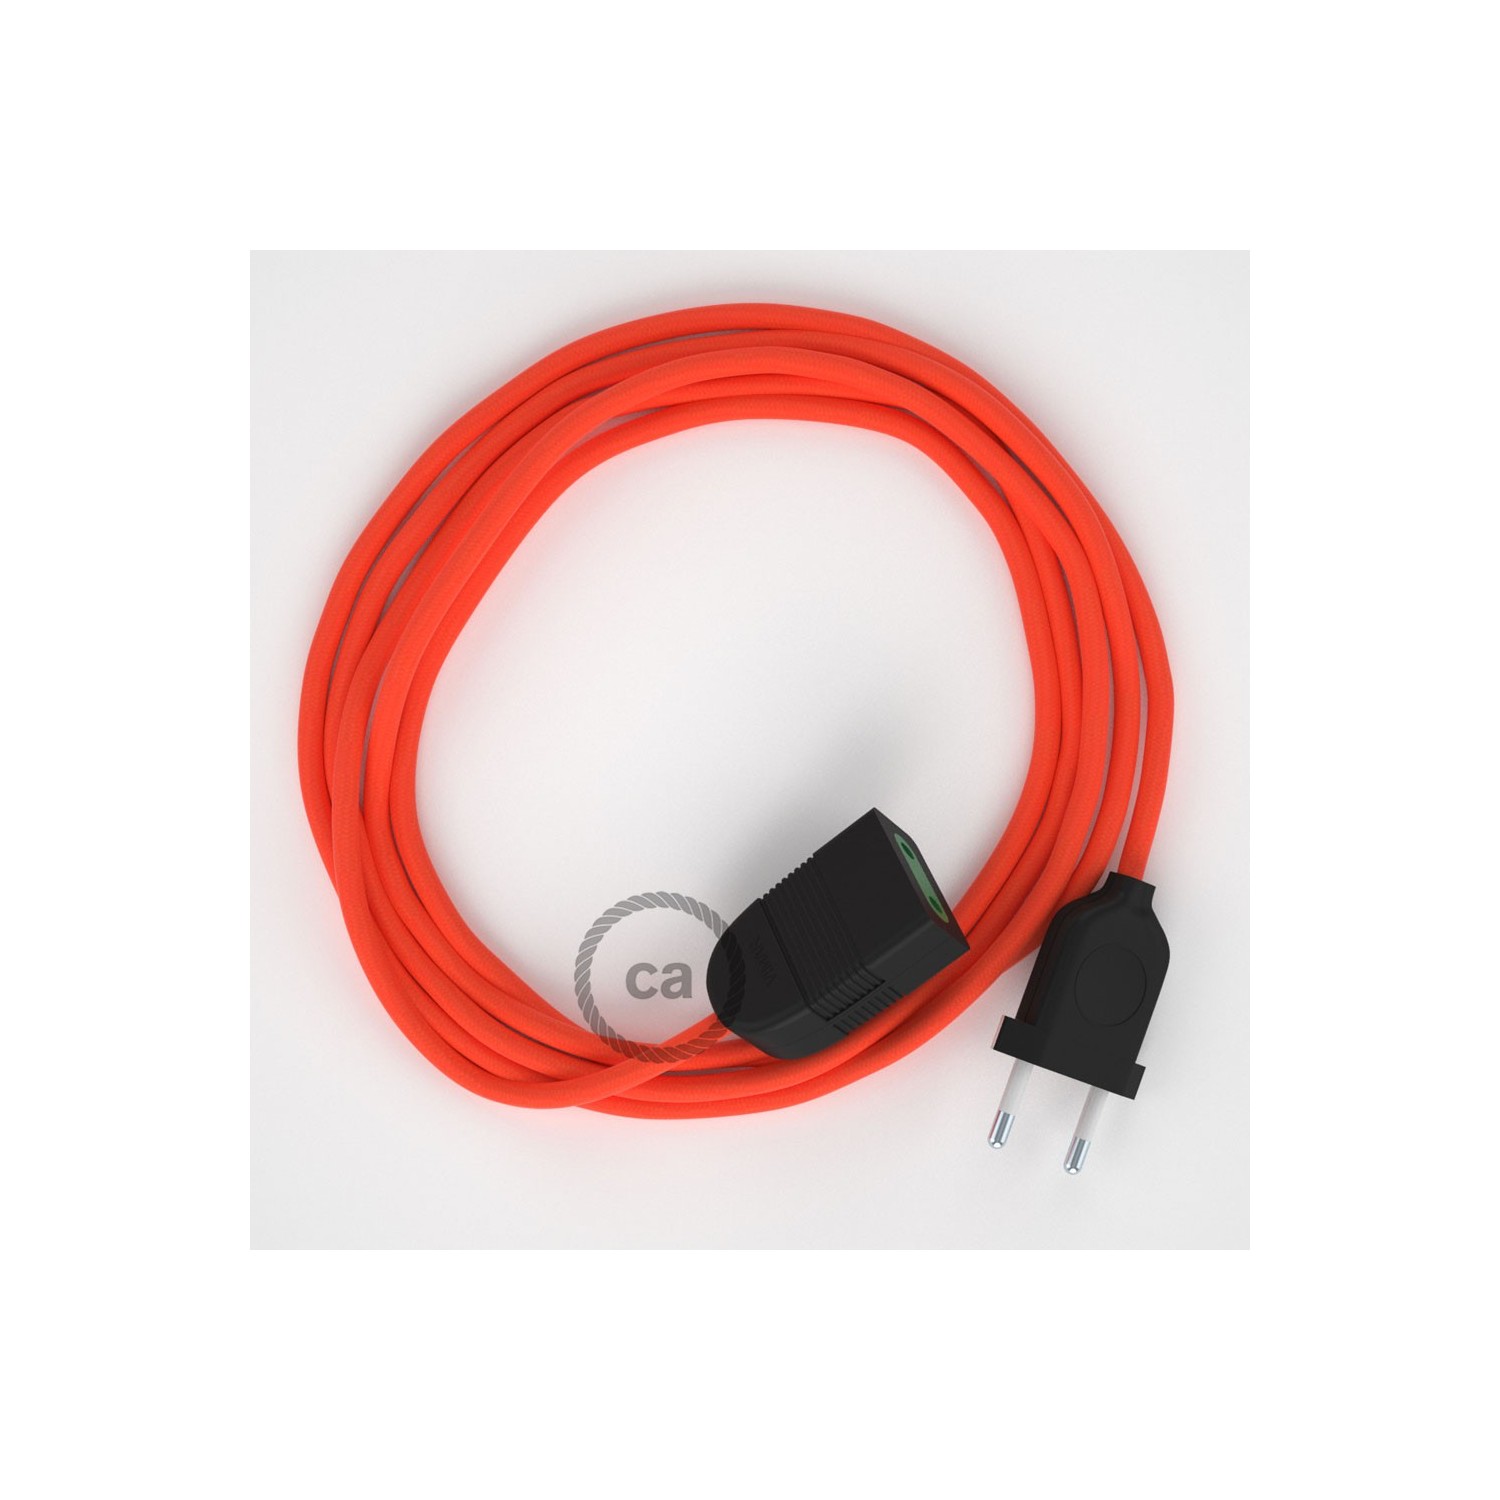 Podaljševalni kabel za napajanje (2P 10A) fluo oranžen rejon RF15 - Made in Italy